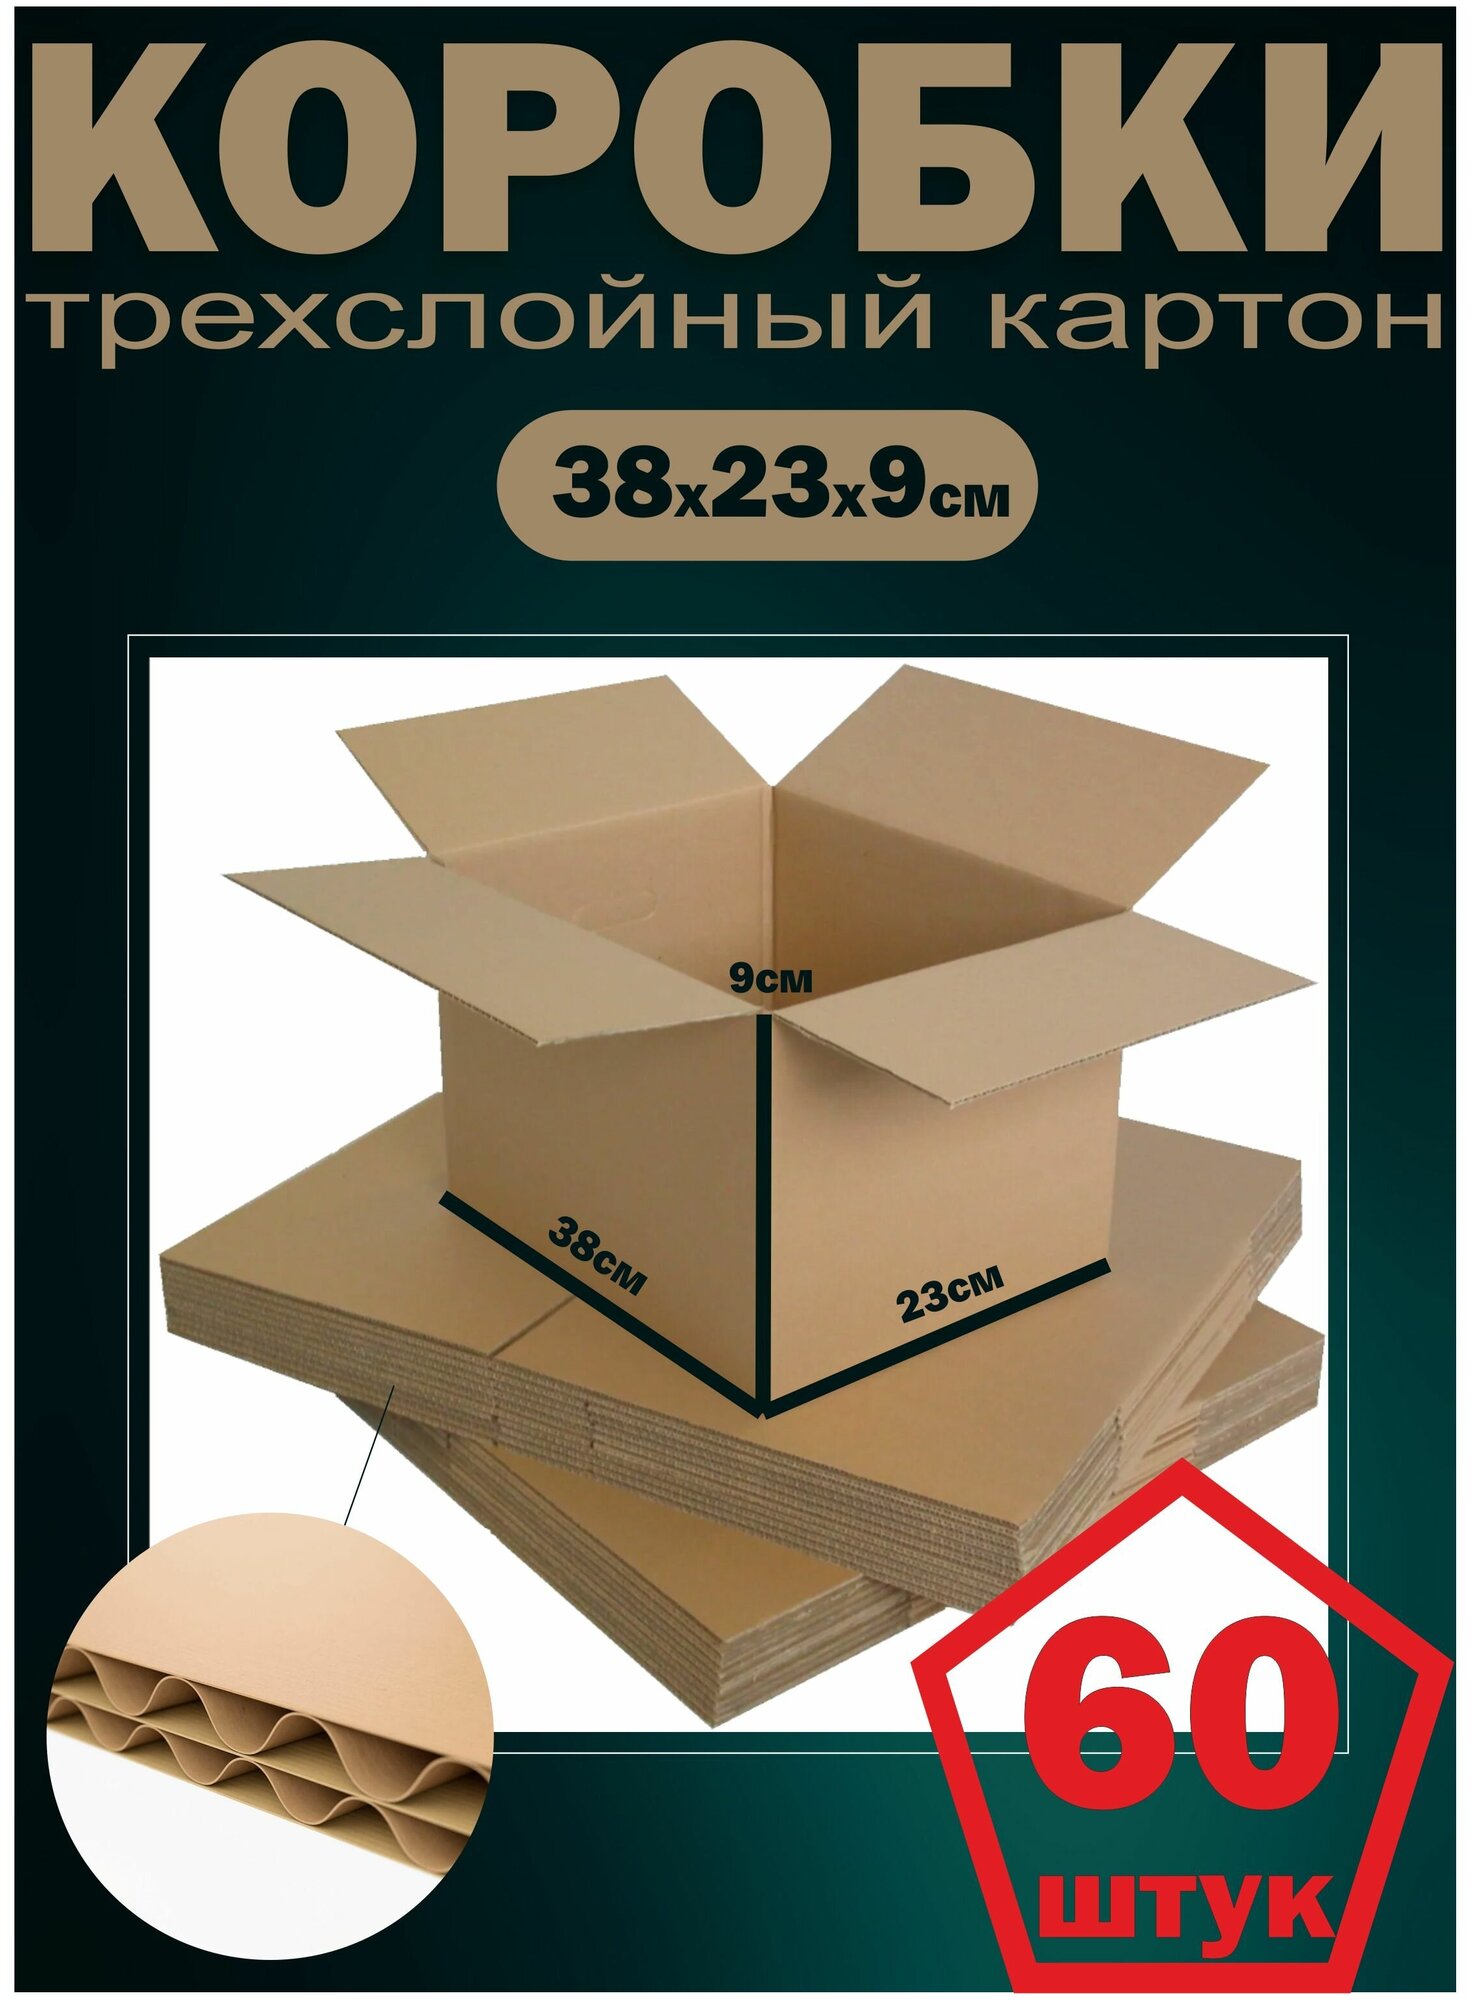 Картонные коробки набор 60шт упаковка для поставок на маркетплейсы 380х230х90мм трехслойный гофрокартон Т22 Рекламастер - фотография № 1